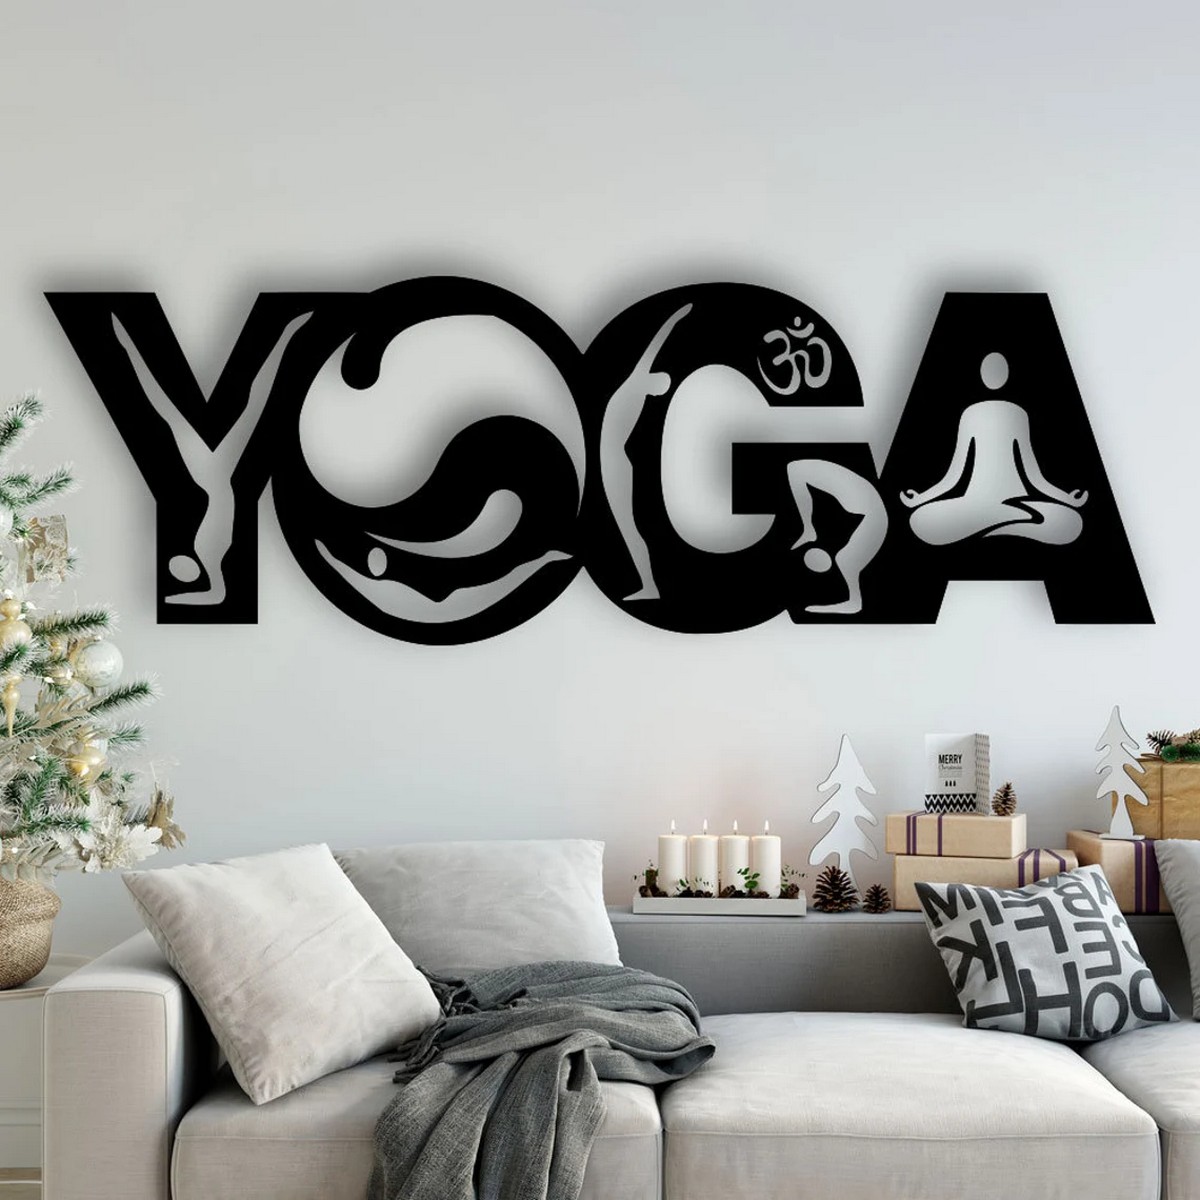 Unique Yoga Studio Wall Art